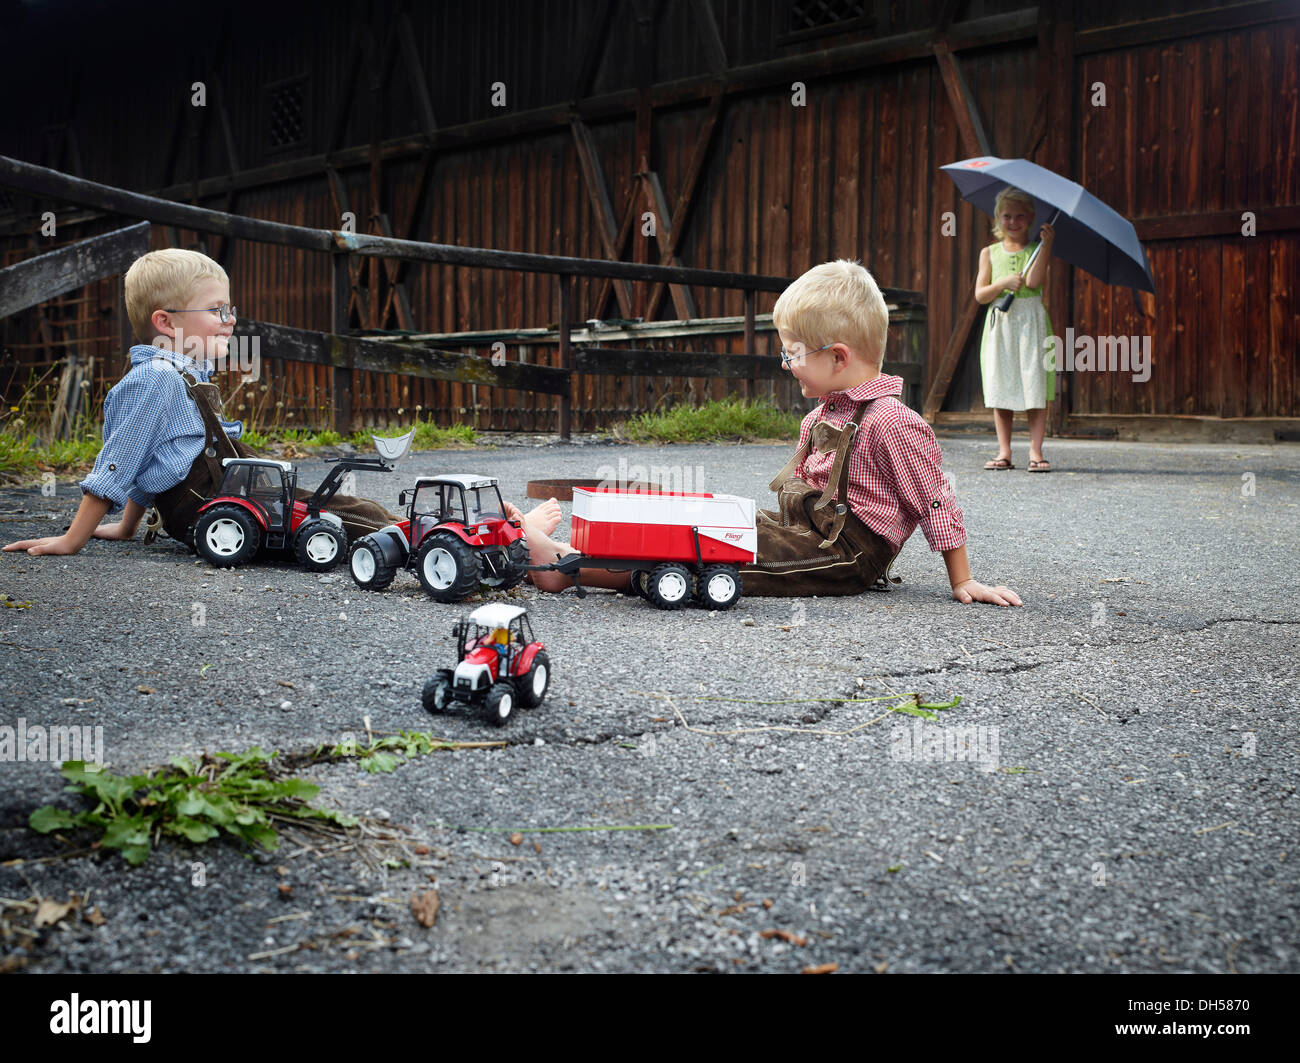 Kinder spielen mit Spielzeug Traktoren am Hof, Reith Im Alpbachtal, Bezirk  Kufstein, Nord-Tirol, Tirol, Österreich Stockfotografie - Alamy